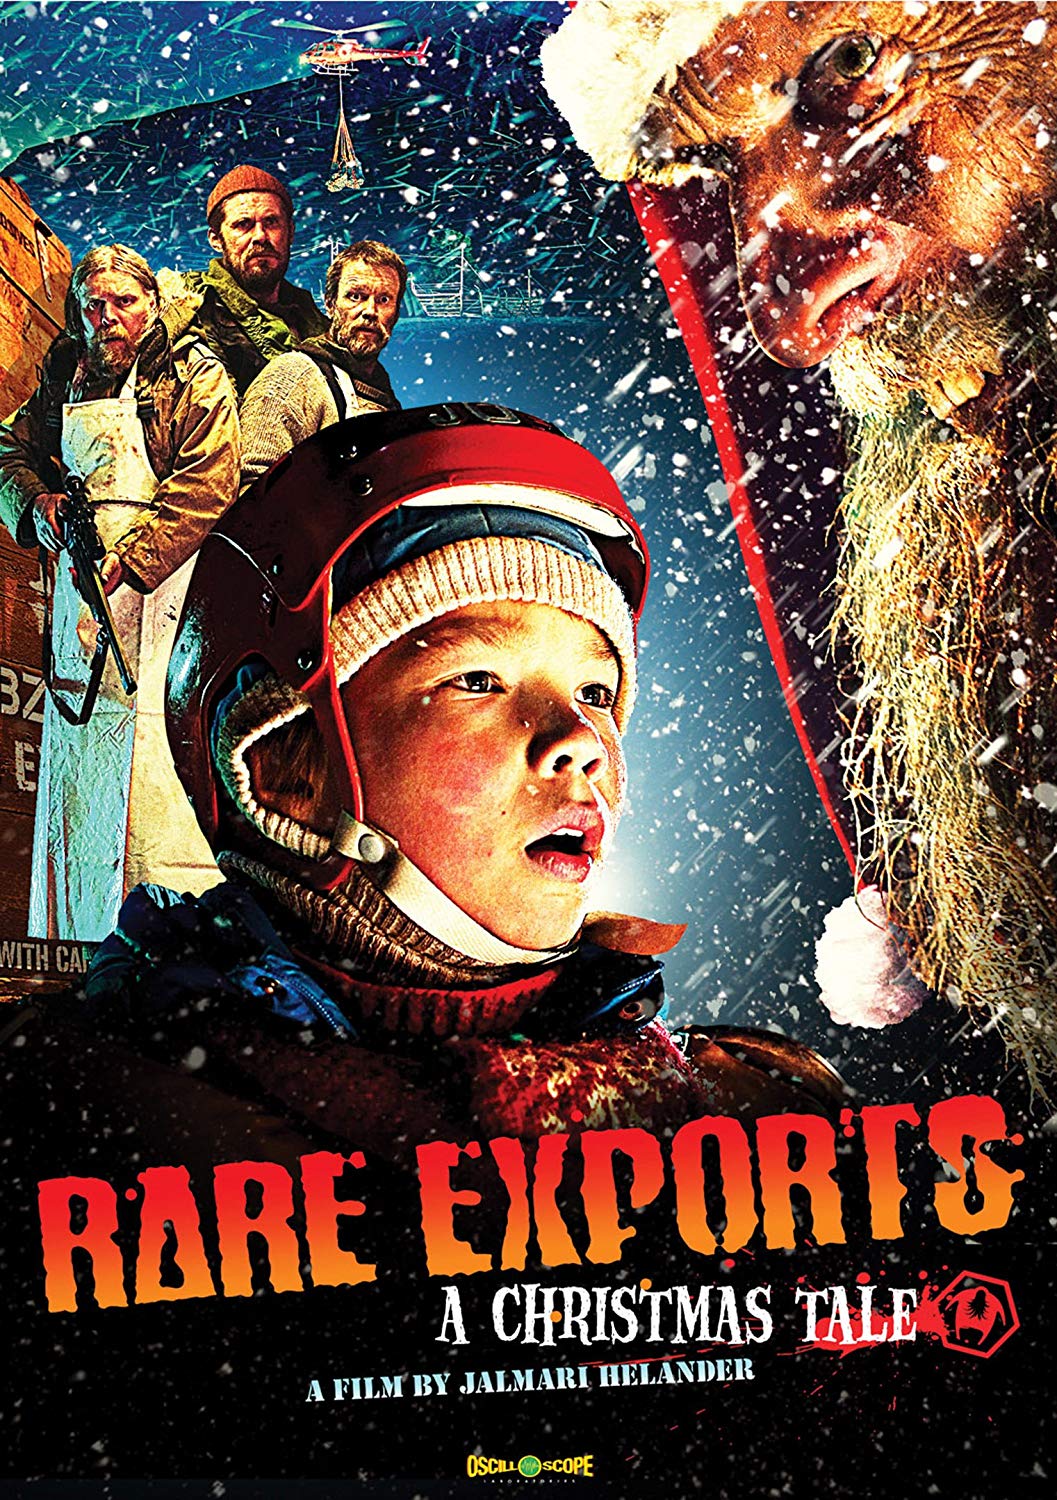 Rare Exports (2010) Main Poster